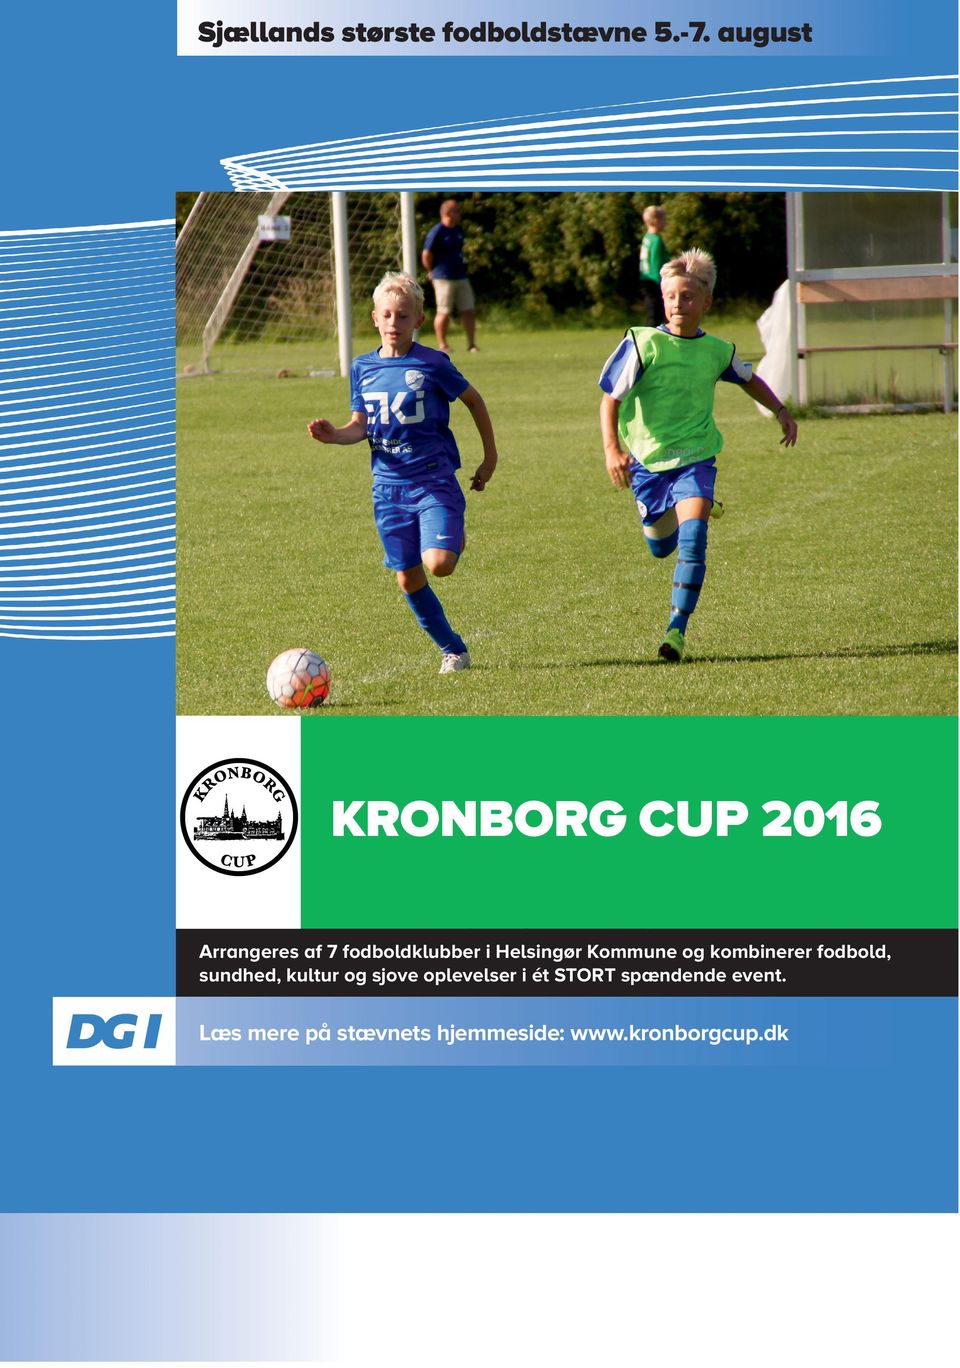 Helsingør Kommune og kombinerer fodbold, sundhed, kultur og